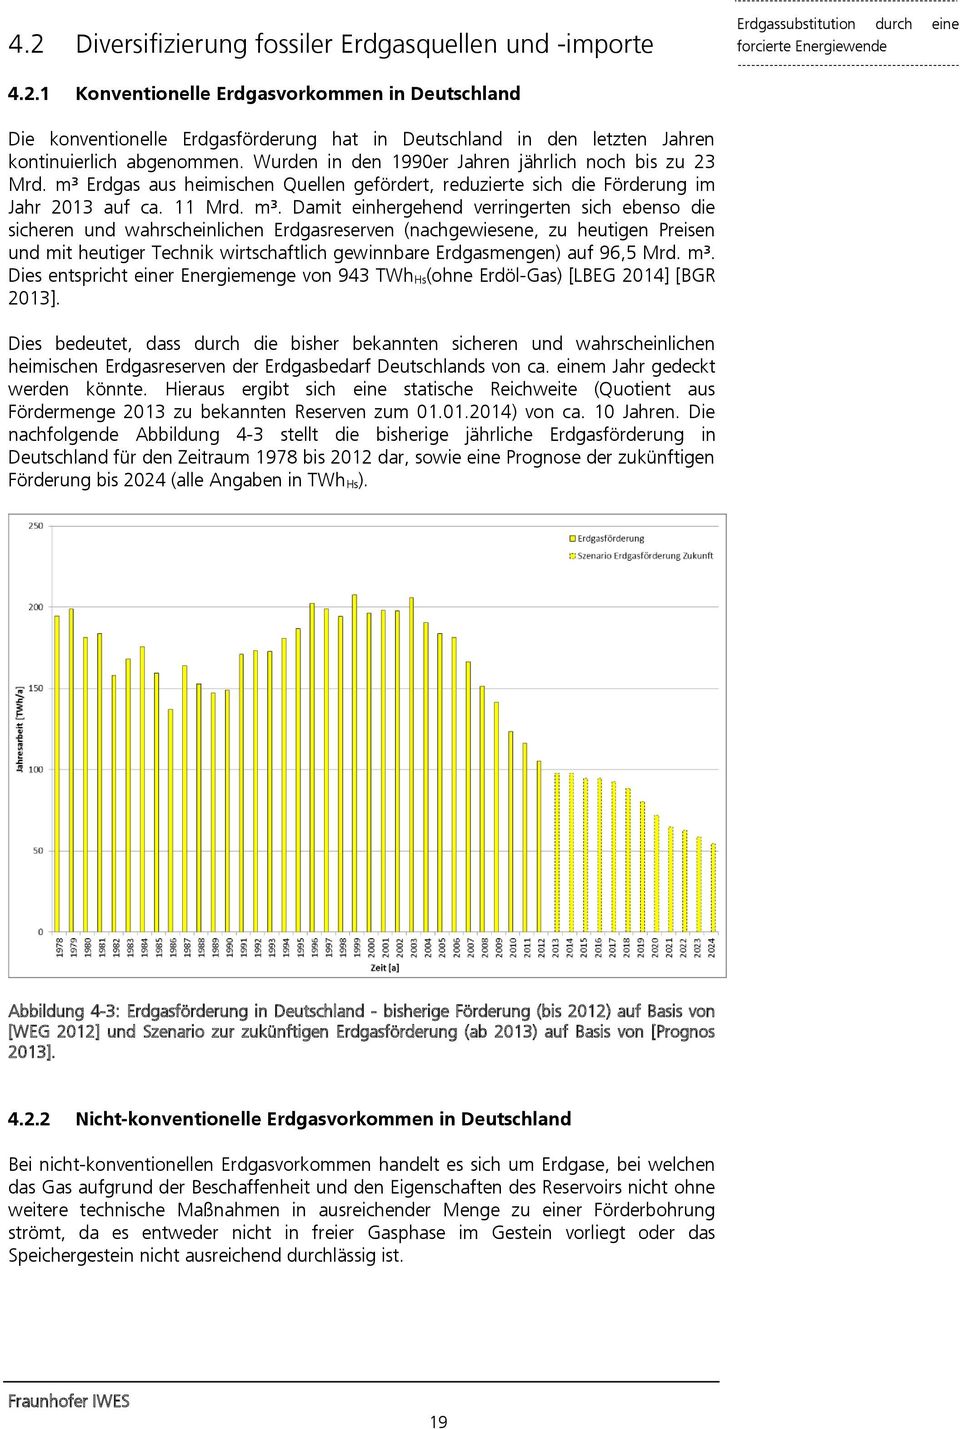 Erdgas aus heimischen Quellen gefördert, reduzierte sich die Förderung im Jahr 2013 auf ca. 11 Mrd. m³.